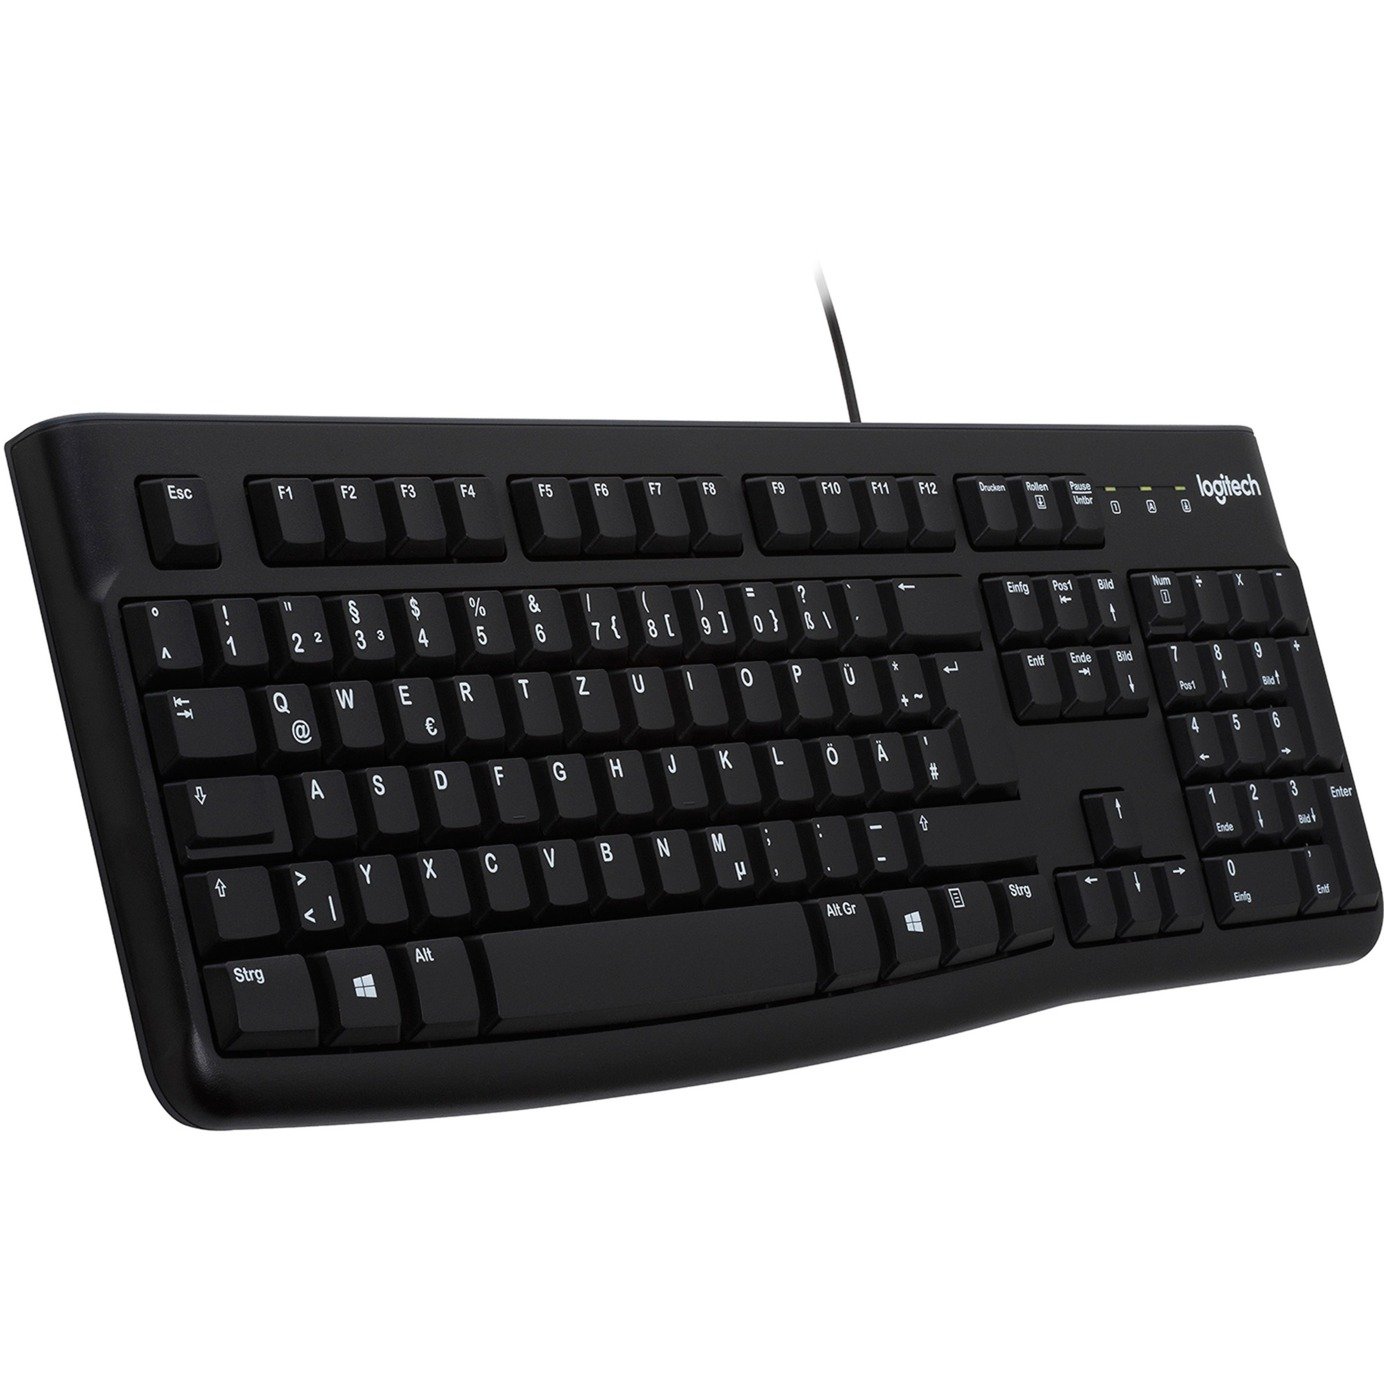 Keyboard K120 for Business, Tastatur von Logitech